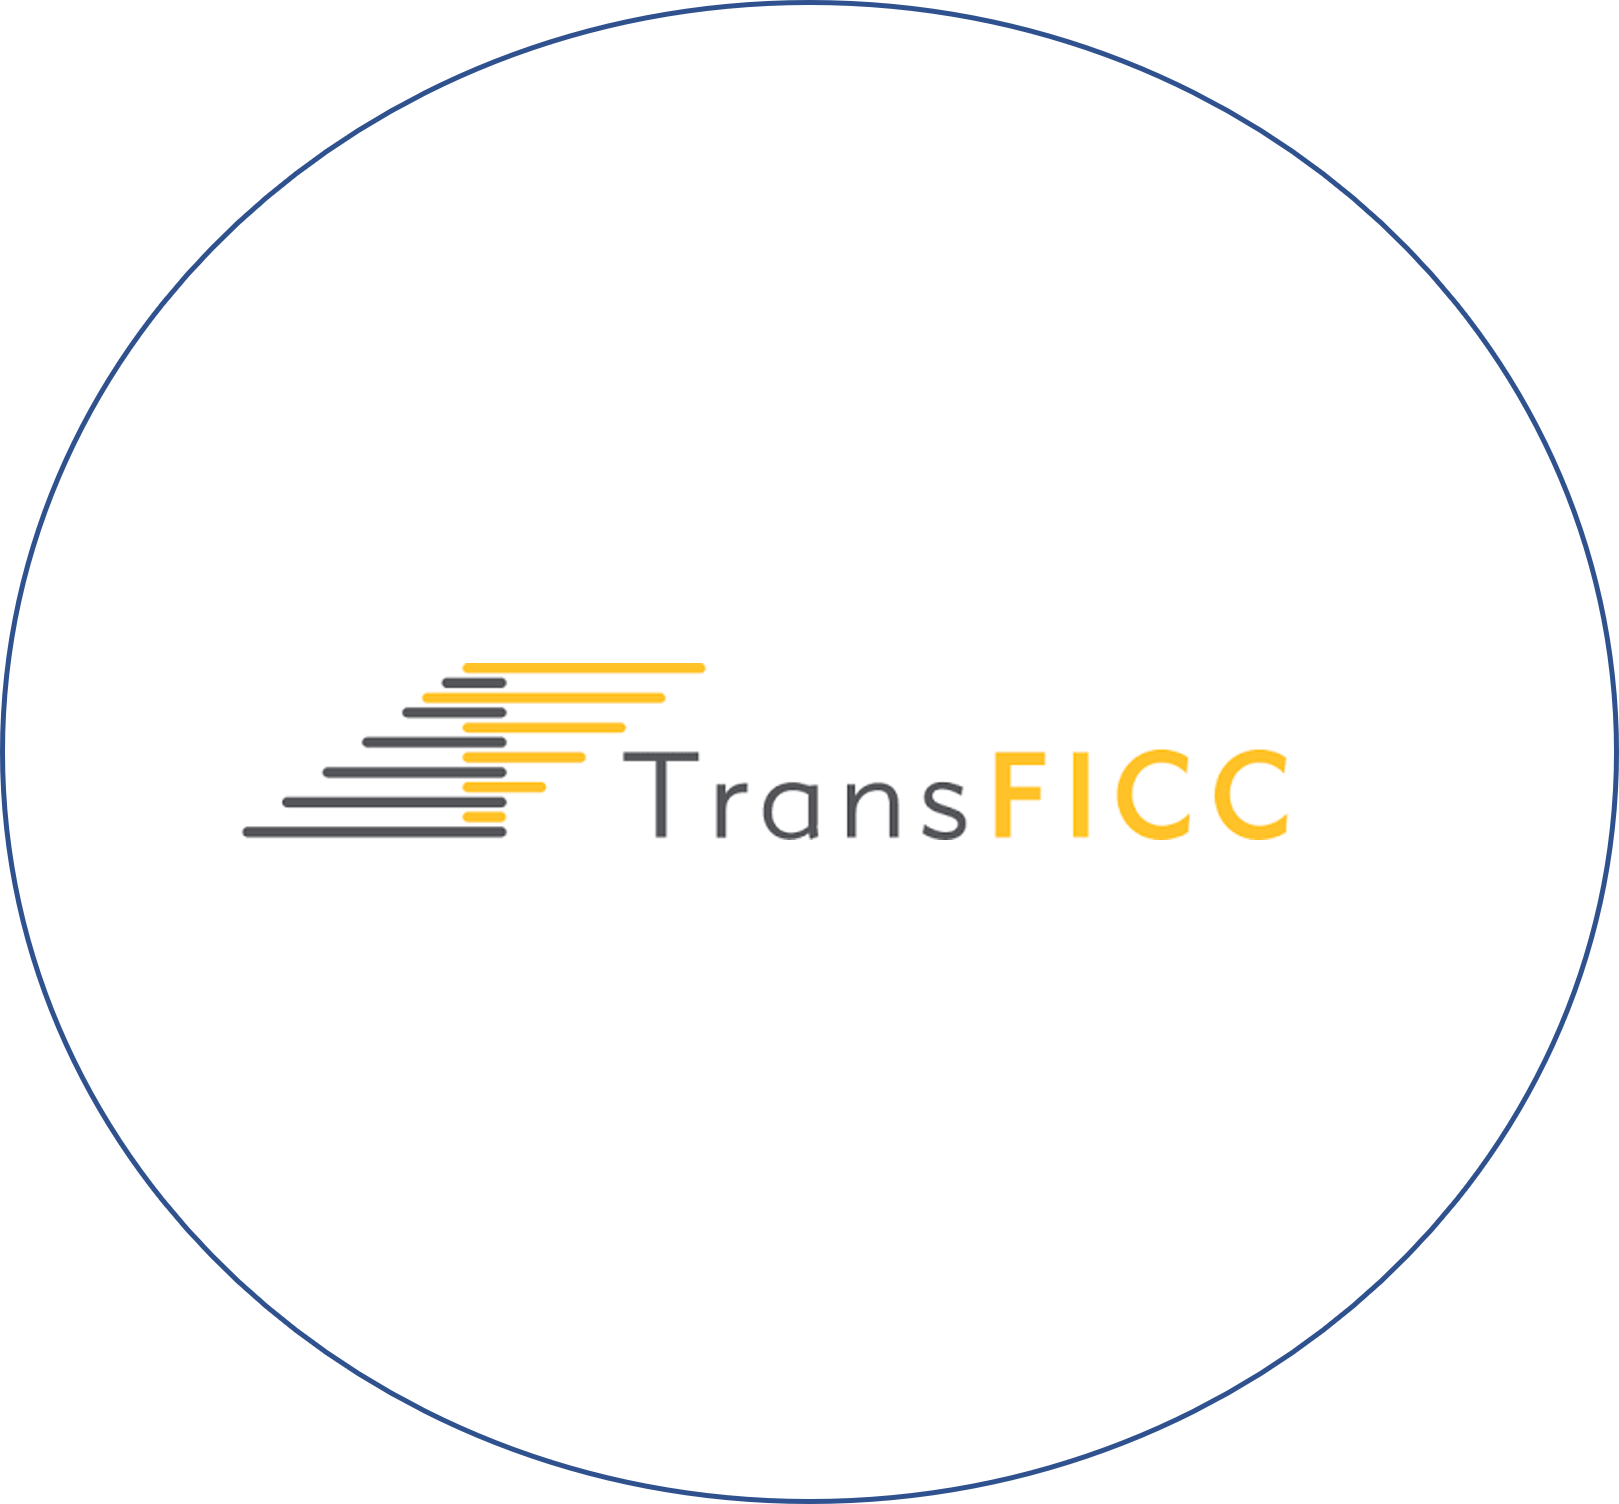 Transficc Circle (1)